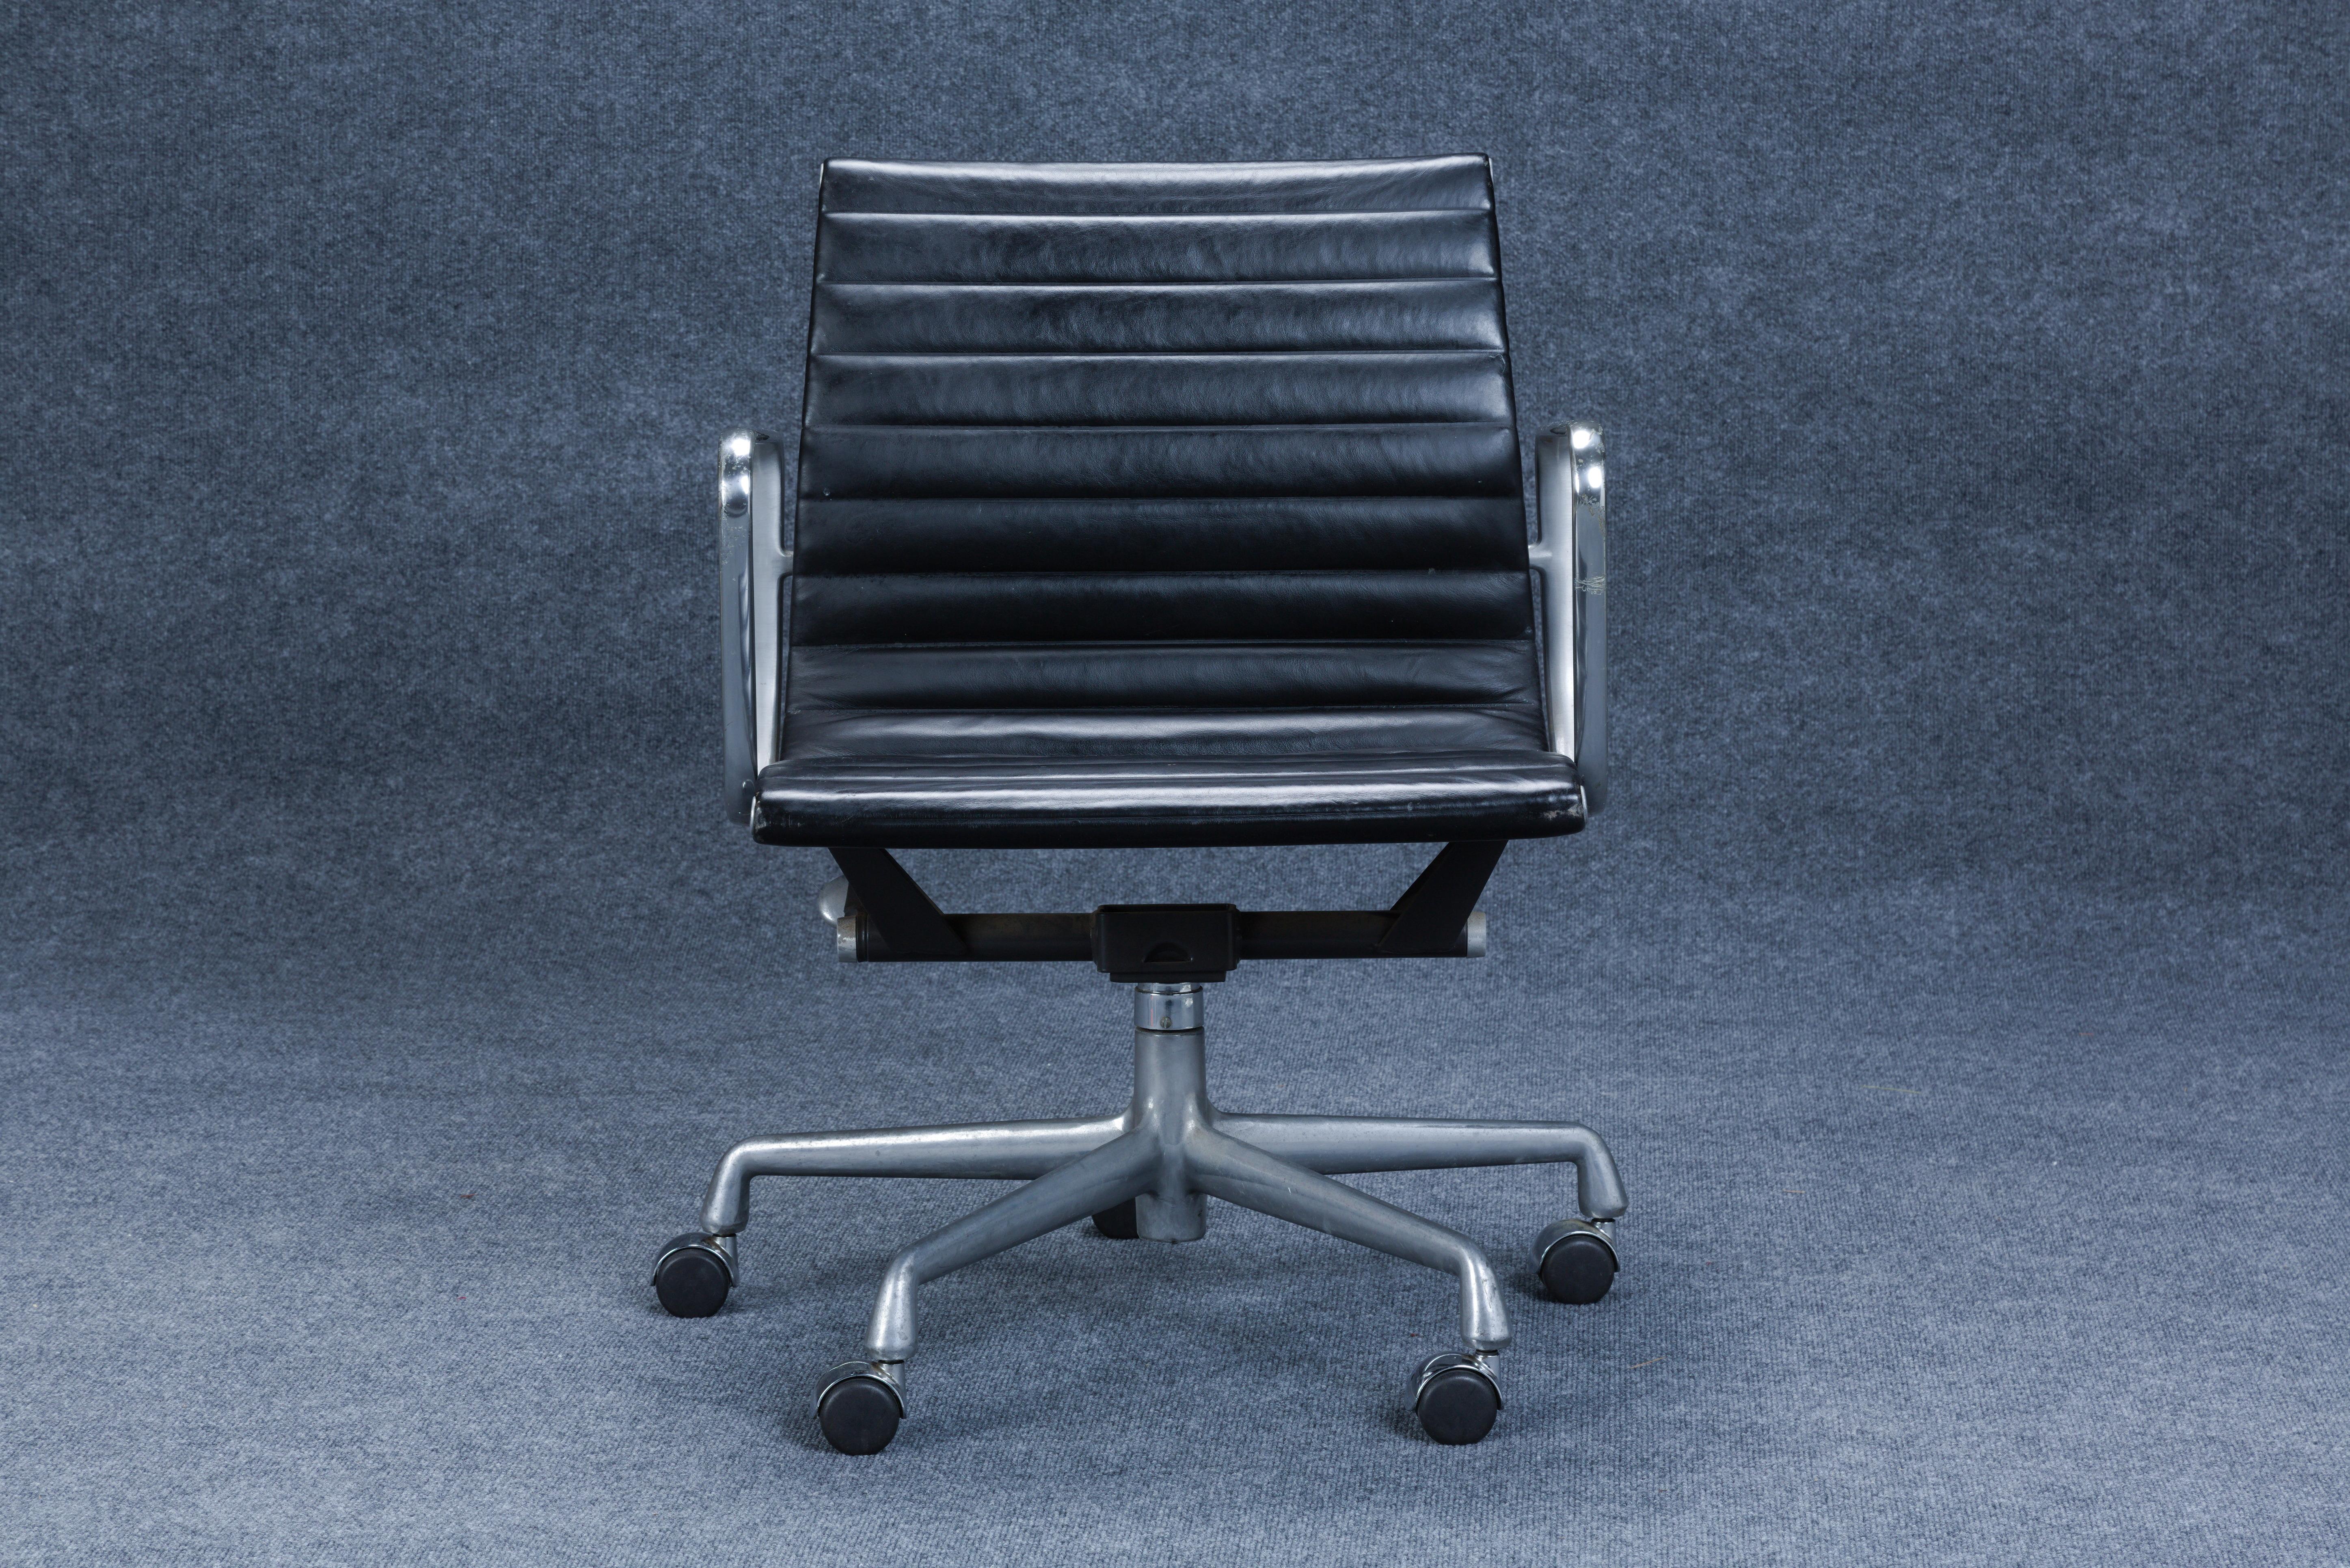 Groupe Eames en aluminium pour la chaise de travail Herman Miller, Zeeland, Michigan, c. 1965, aluminium, cuir, étiquette du fabricant Herman Miller, ht. 30, ld. 23, dp. 24 in. La hauteur du siège est réglable entre 17 et 20 pouces.

Bernice